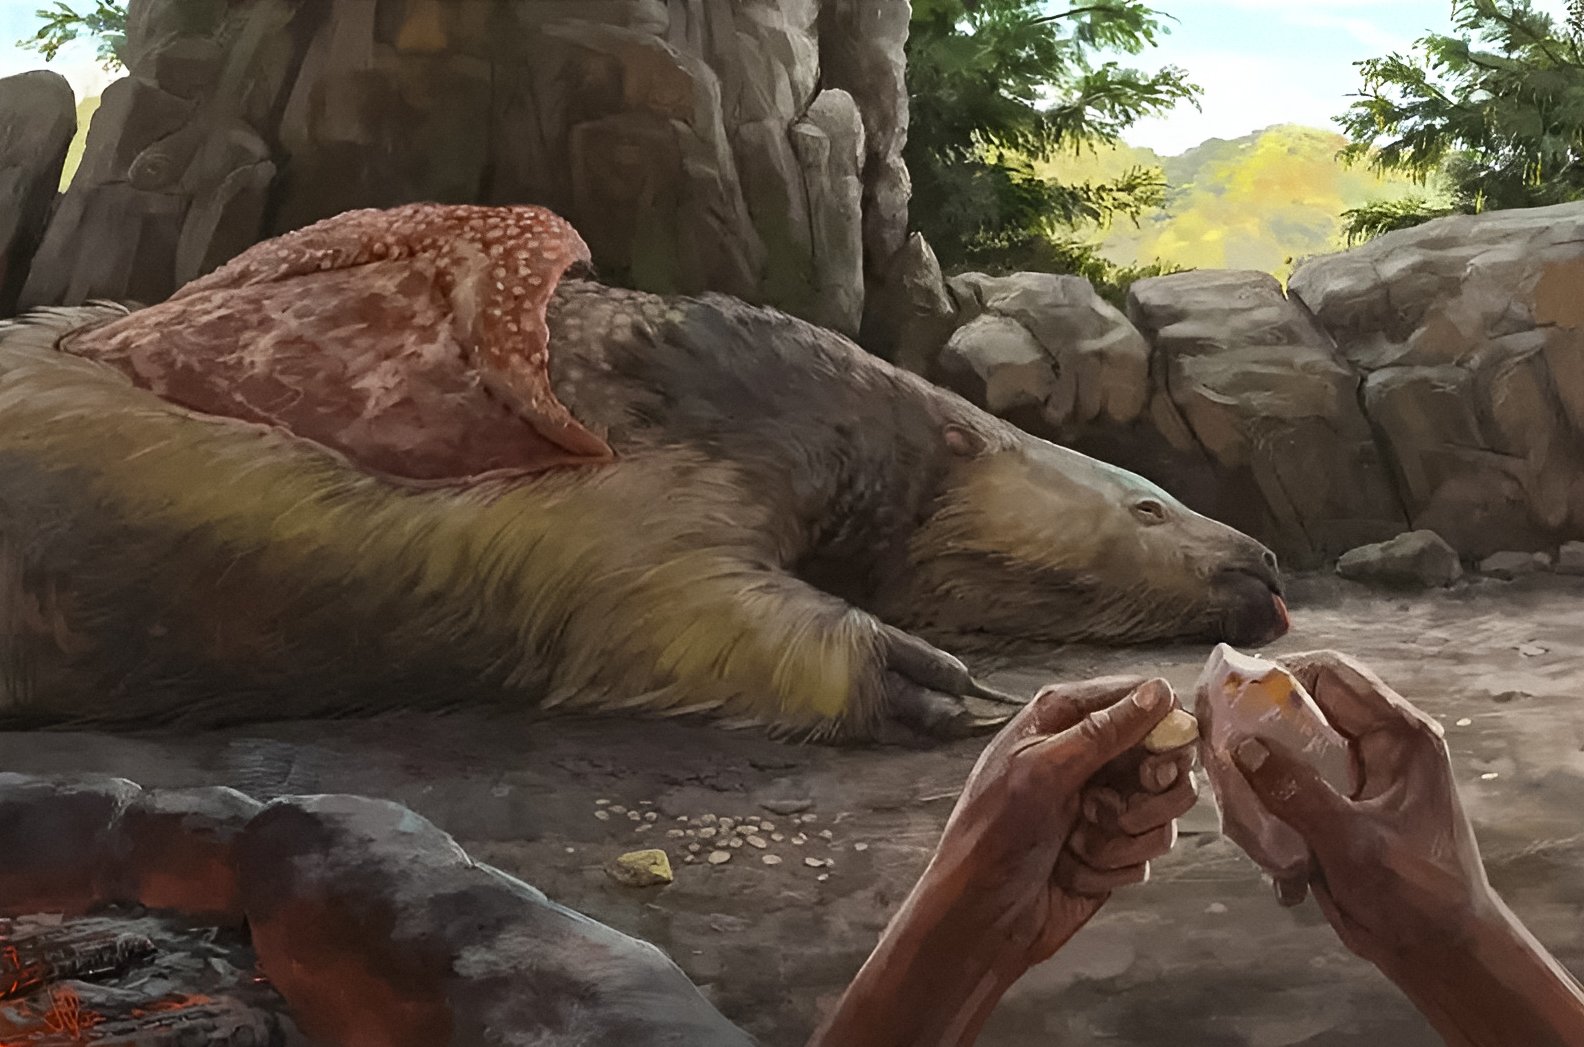 Mensen waren minstens 25,000 jaar geleden in Zuid-Amerika, onthullen oude bothangers 1